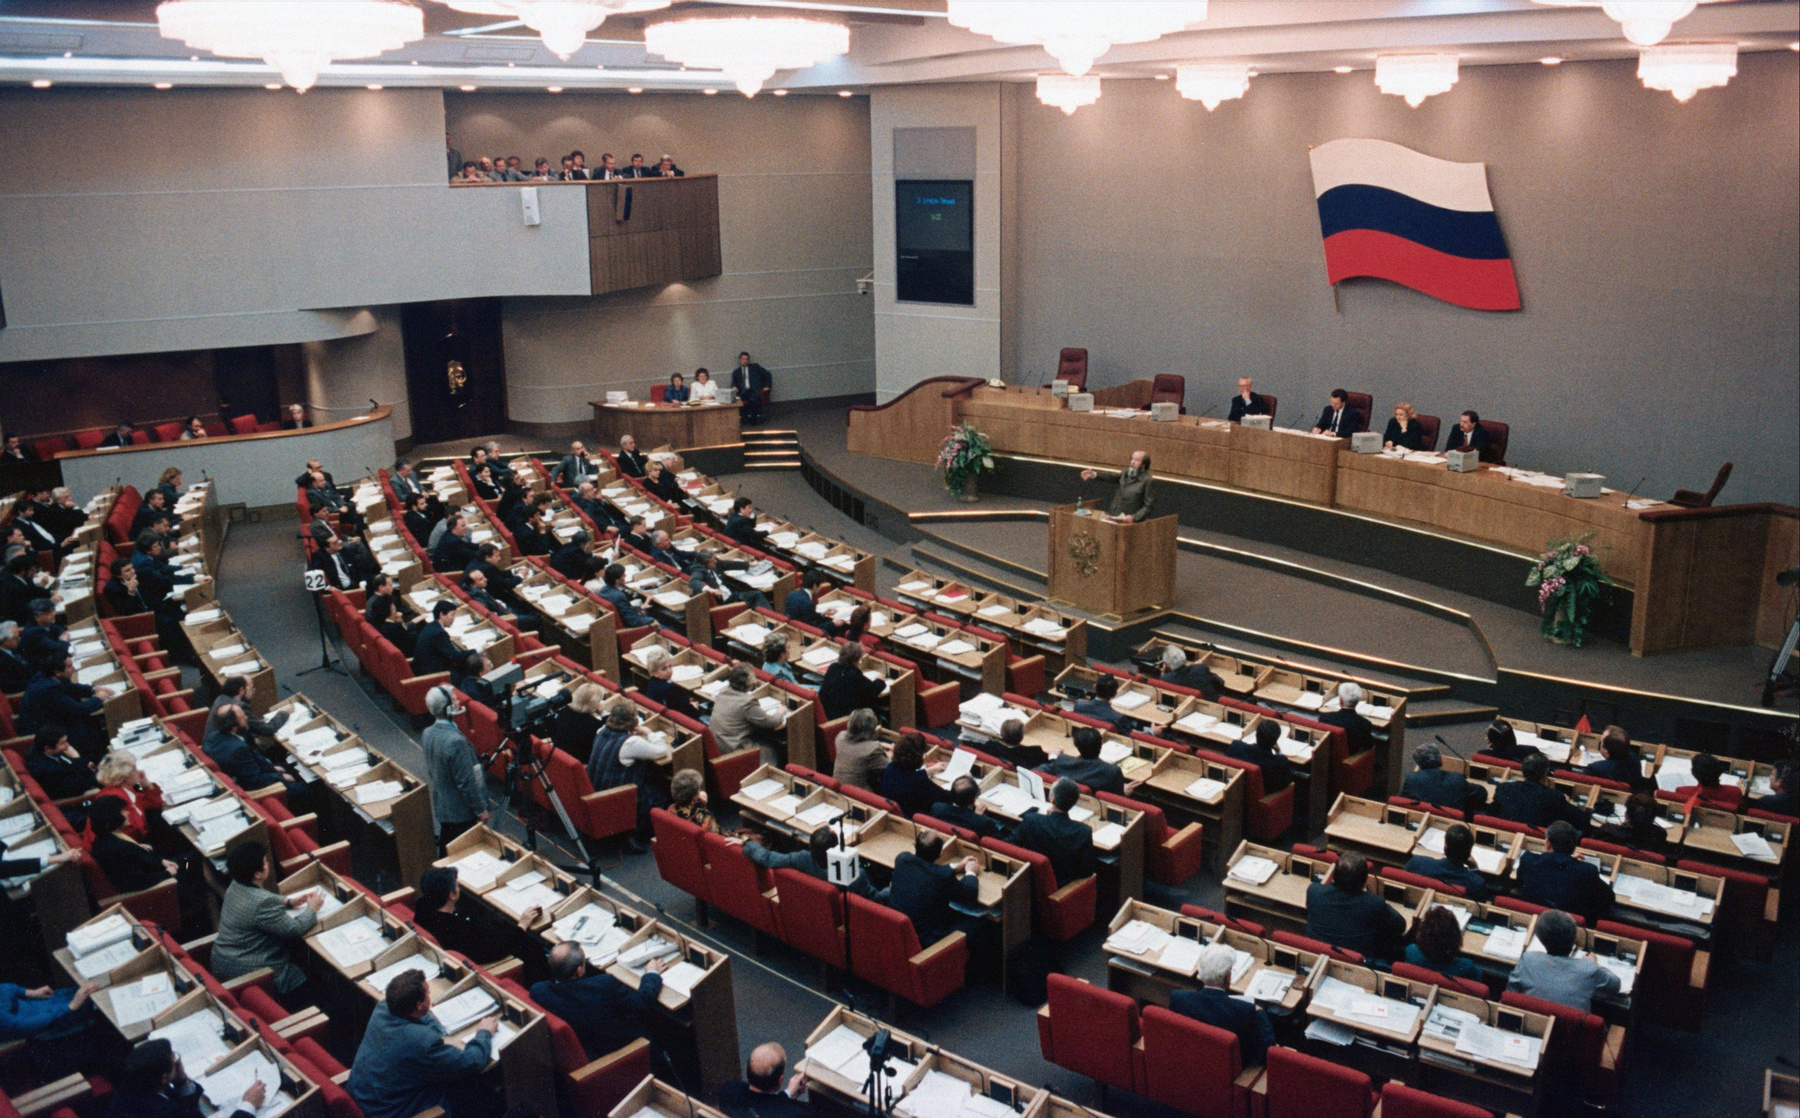 Szolzsenyicin ravatala az Orosz Tudományos Akadémia kupolacsarnokában 2008. augusztus 5-én. Élete utolsó évtizedében Putyin rendszerét támogatta, ezért írófejedelemnek kijáró állami gyászszertartással búcsúztatták.